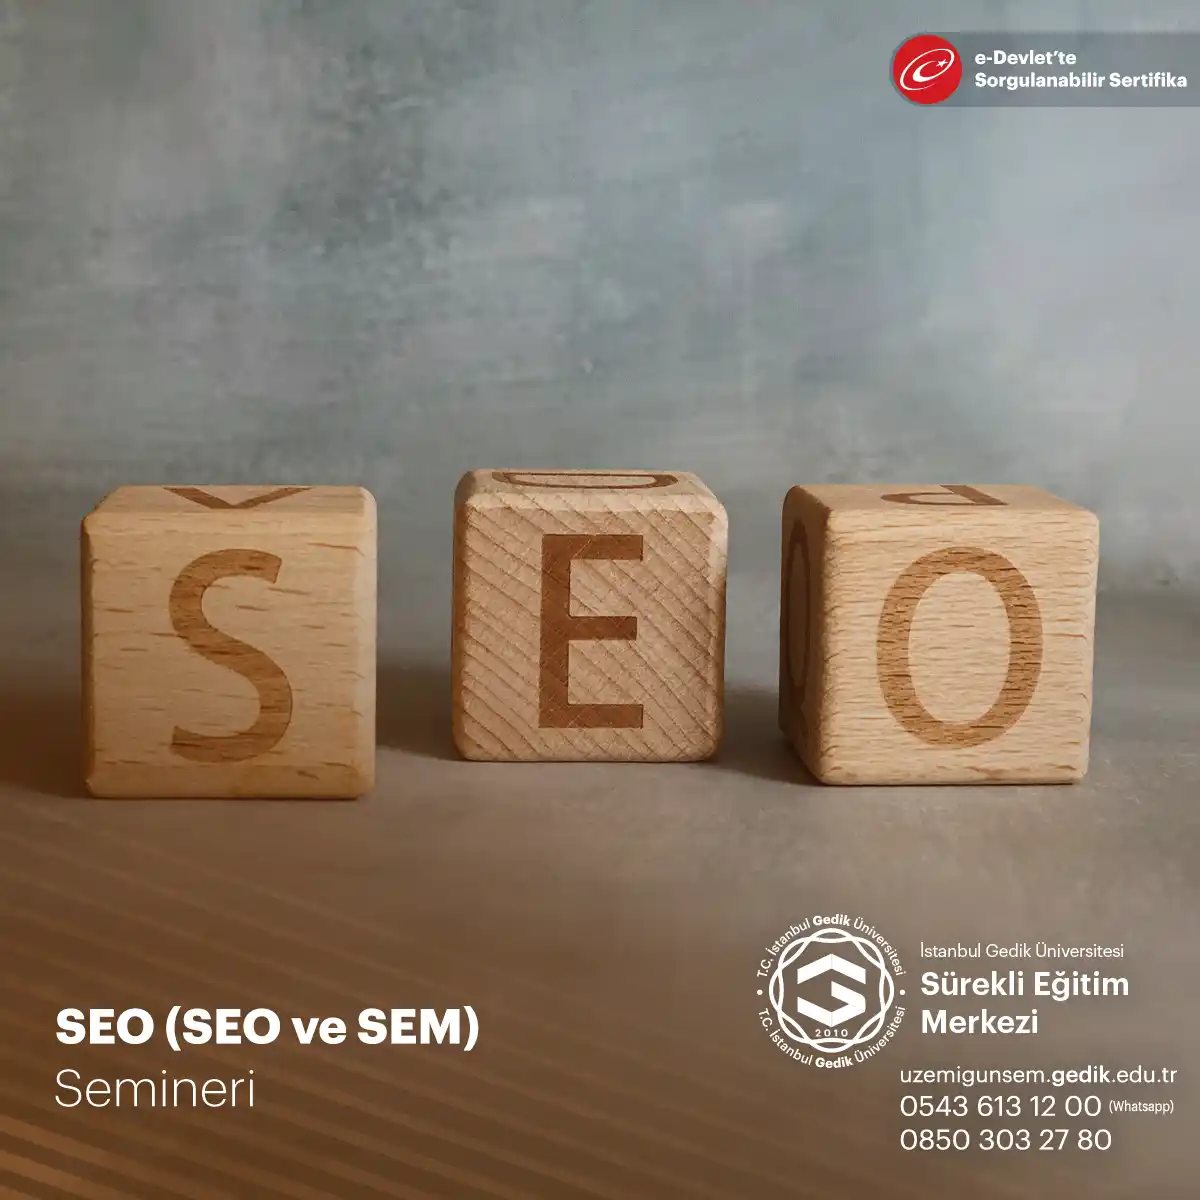 SEO (Search Engine Optimization) ve SEM (Search Engine Marketing), dijital pazarlama stratejilerinin temel taşlarıdır.